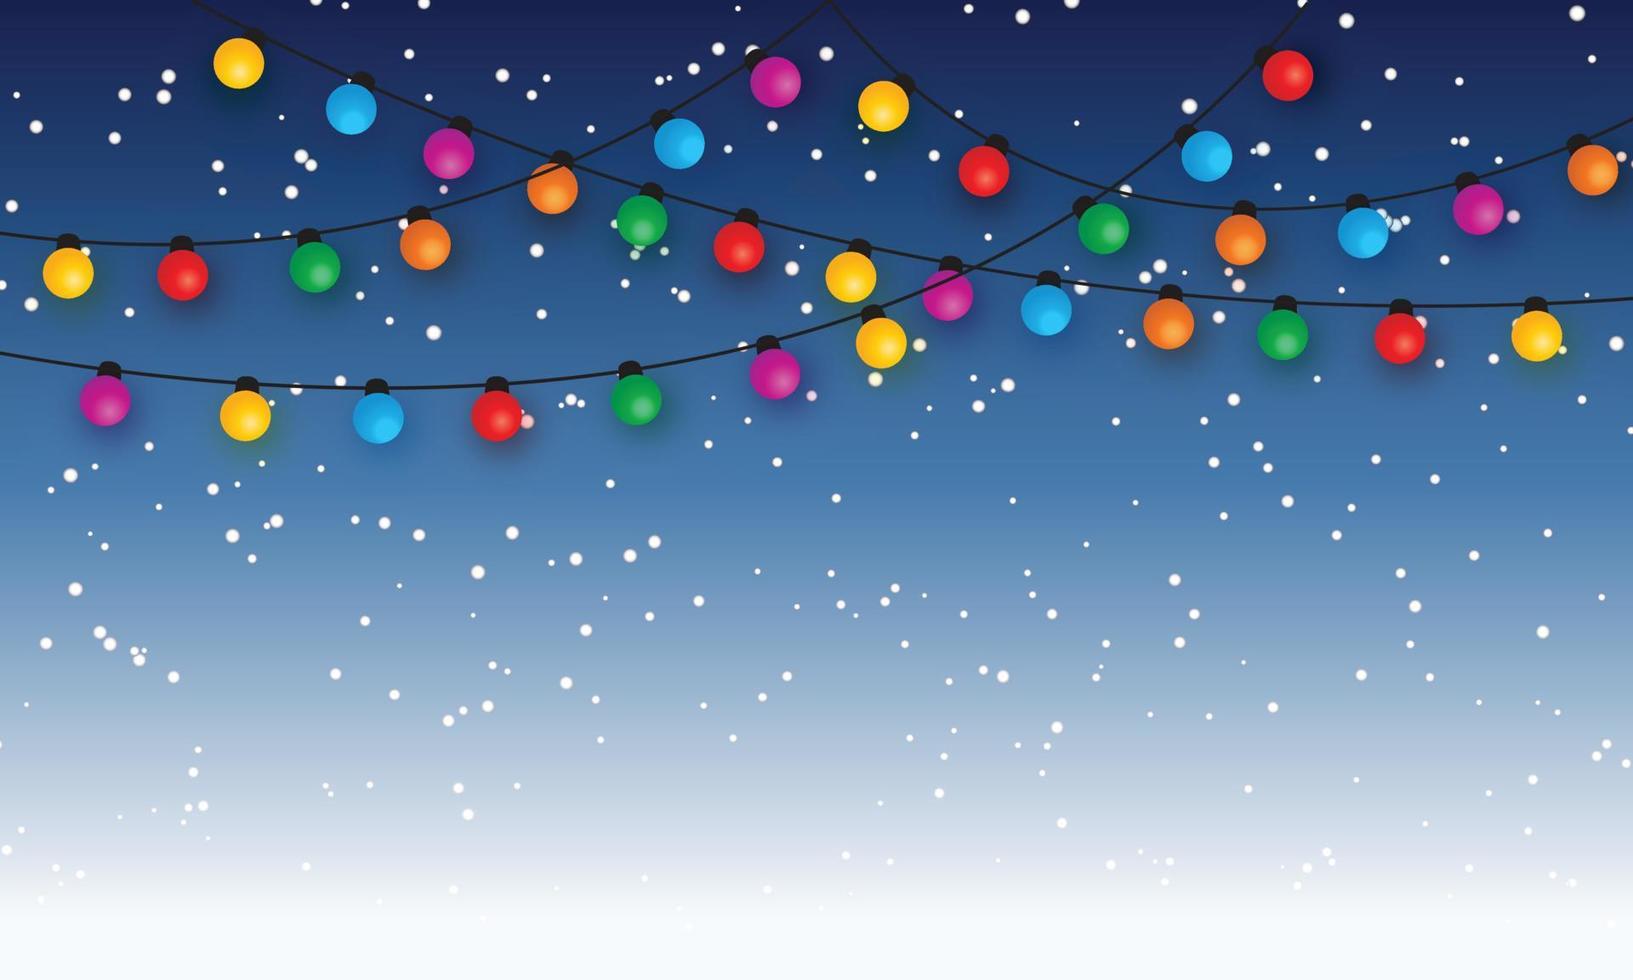 Christmas light bulbs on starry sky background vector